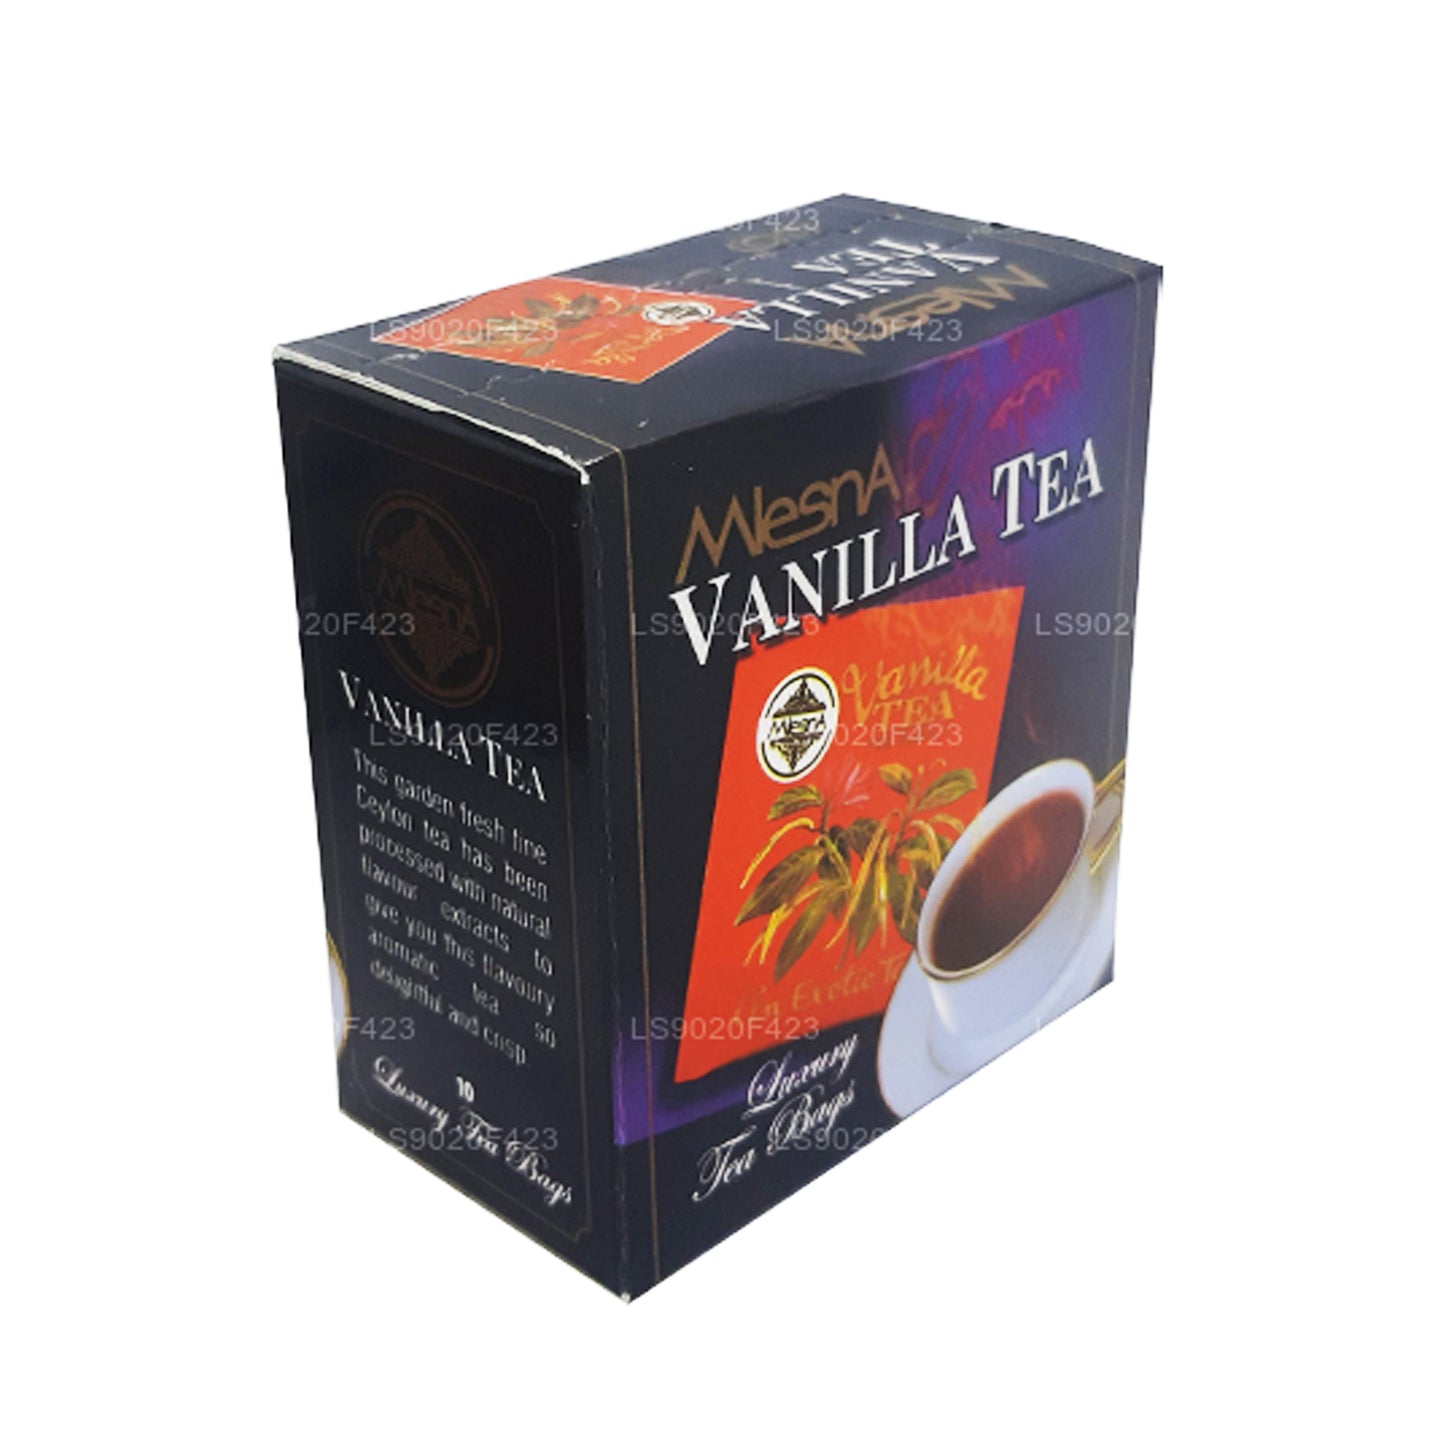 Herbata waniliowa Mlesna (20g) 10 luksusowych torebek na herbatę